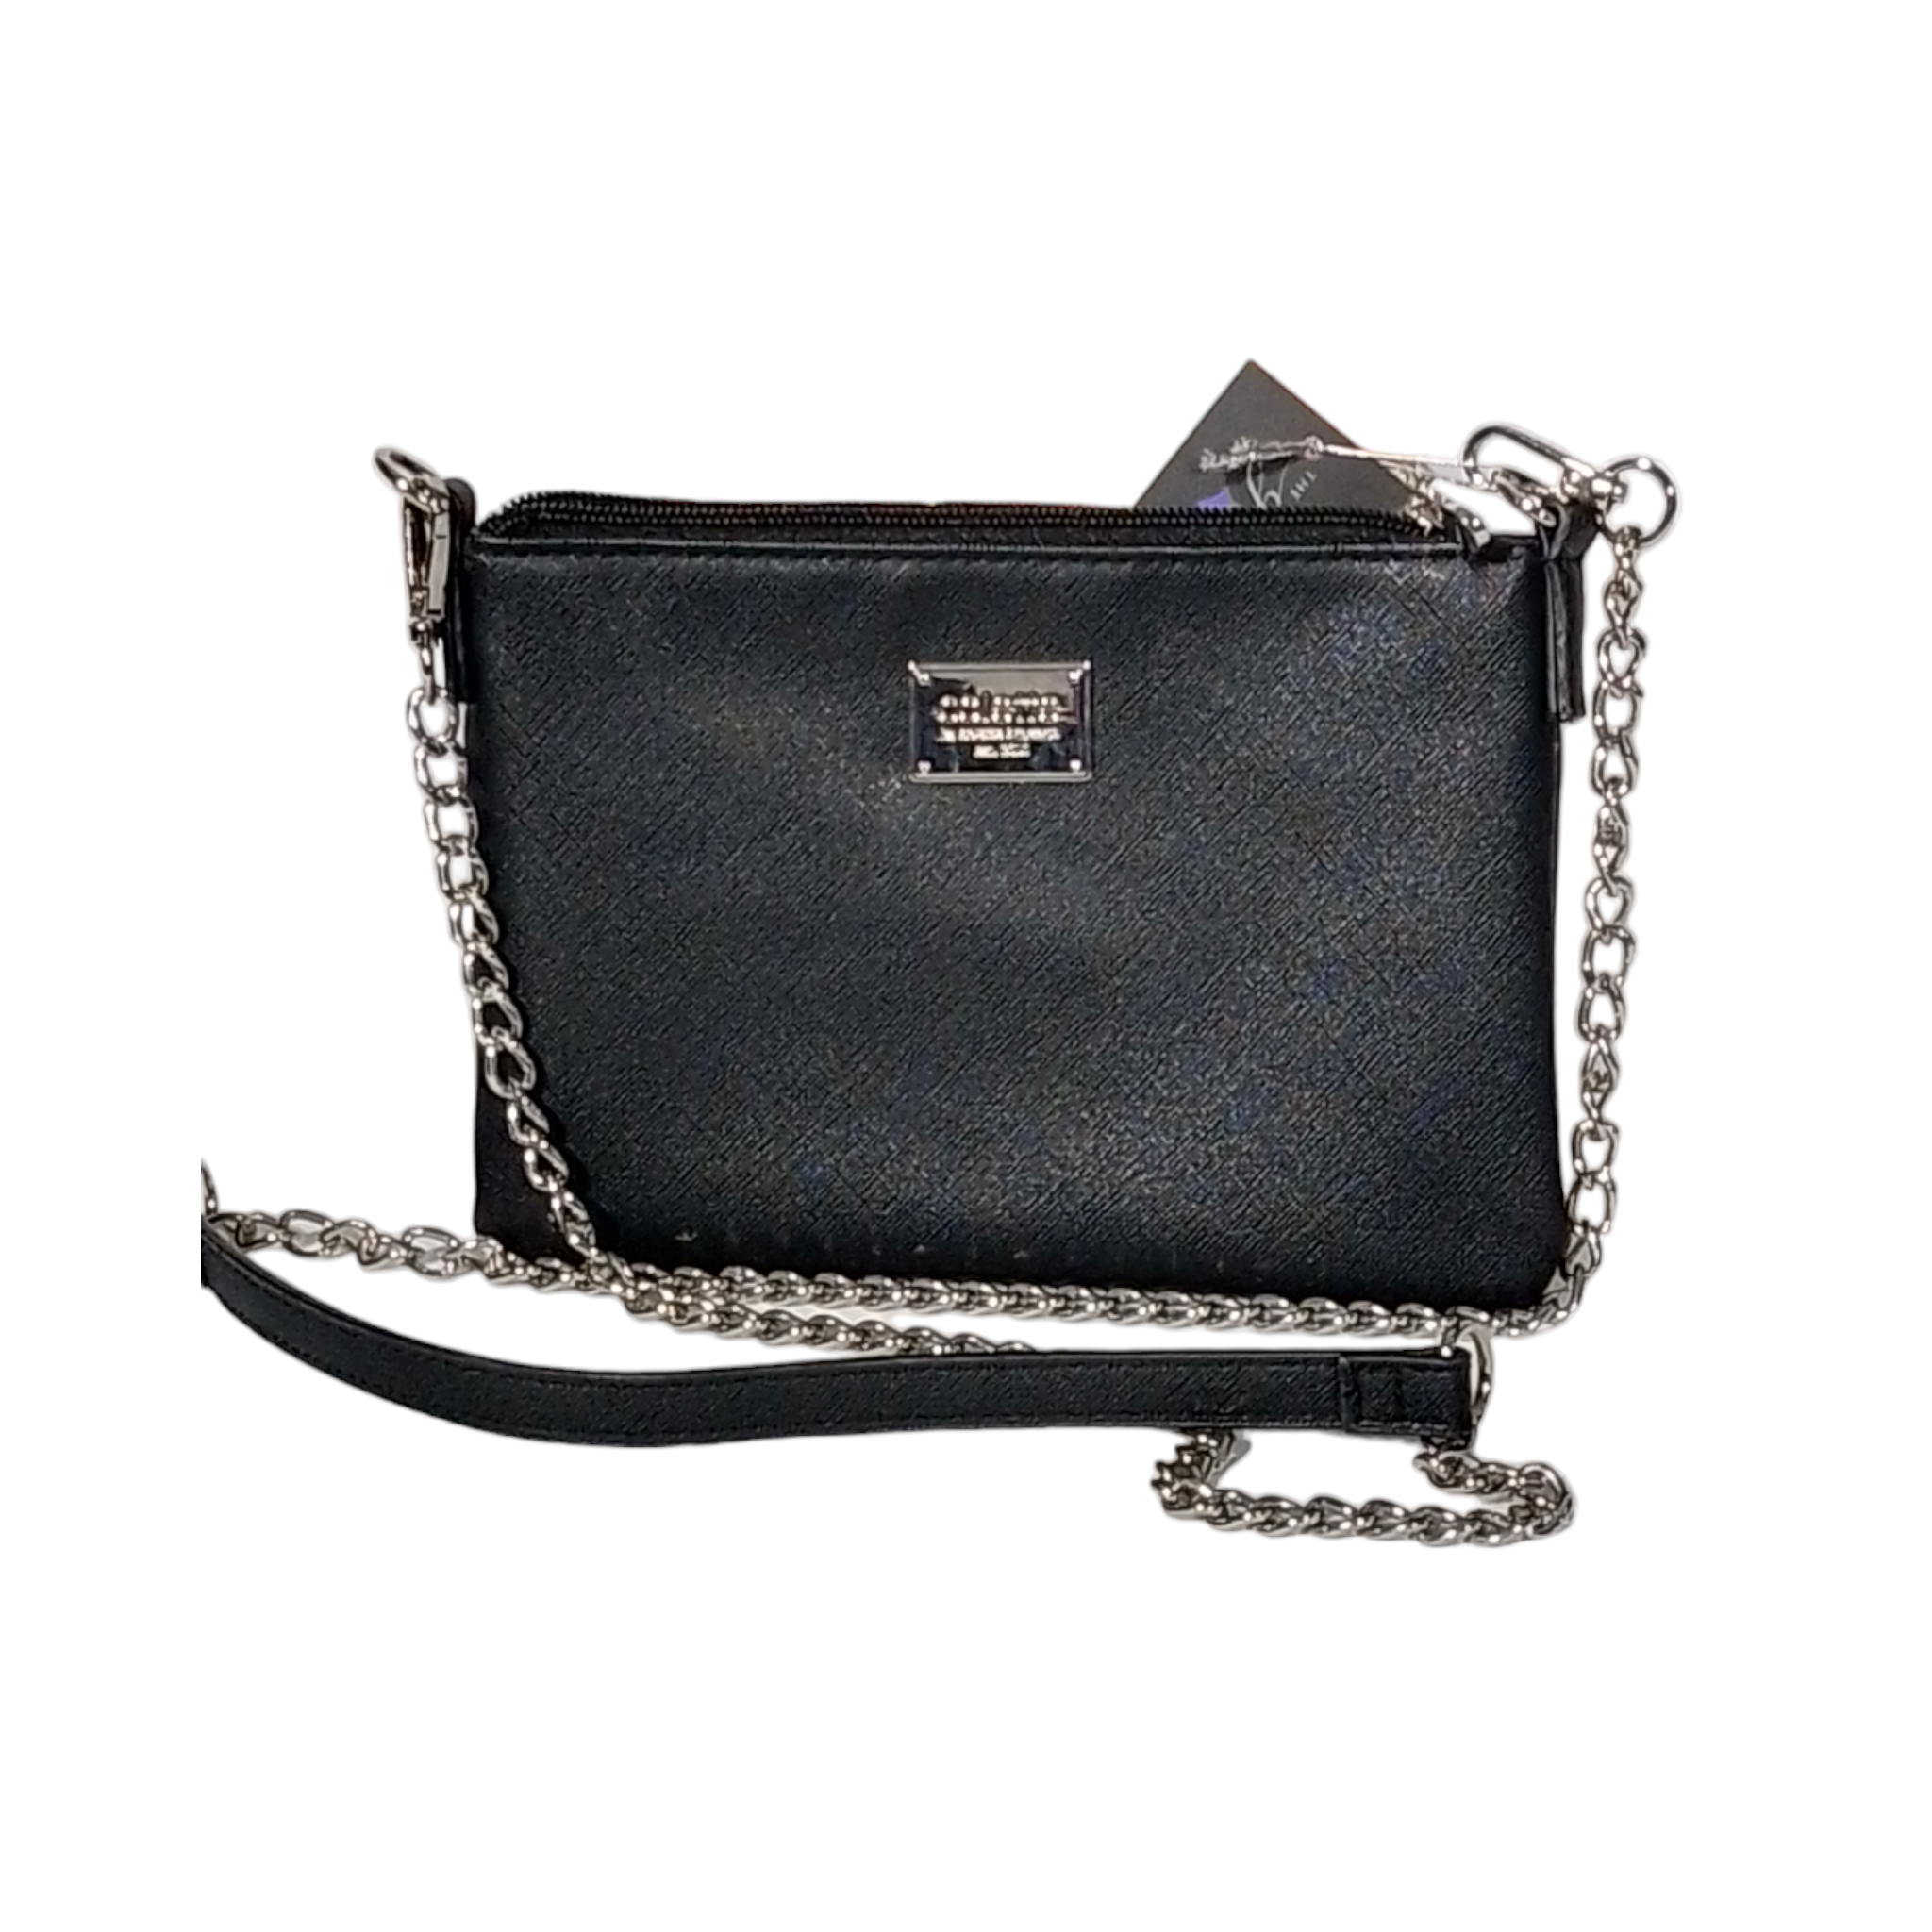 Buy Colette Bowler Bag - Handbag Shoulder Black Vinyl Cotton Fabric Online